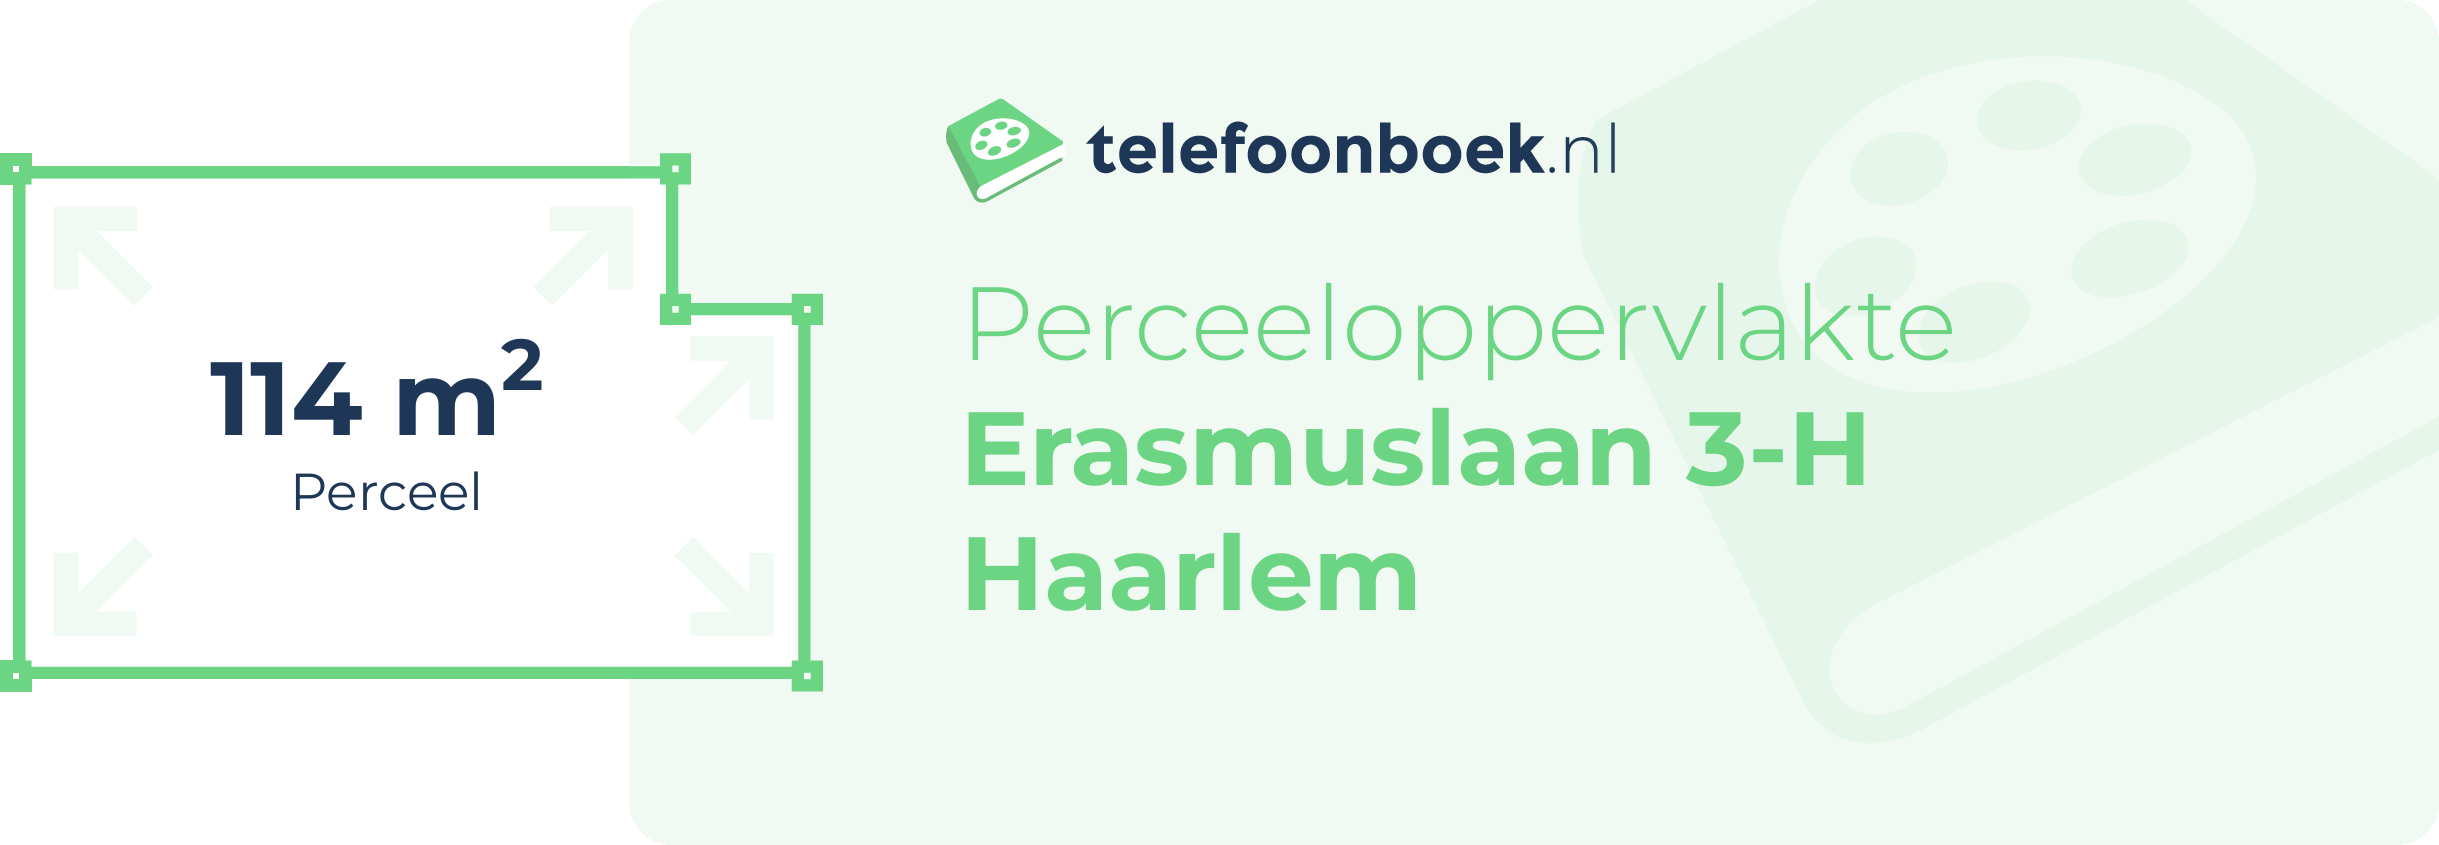 Perceeloppervlakte Erasmuslaan 3-H Haarlem